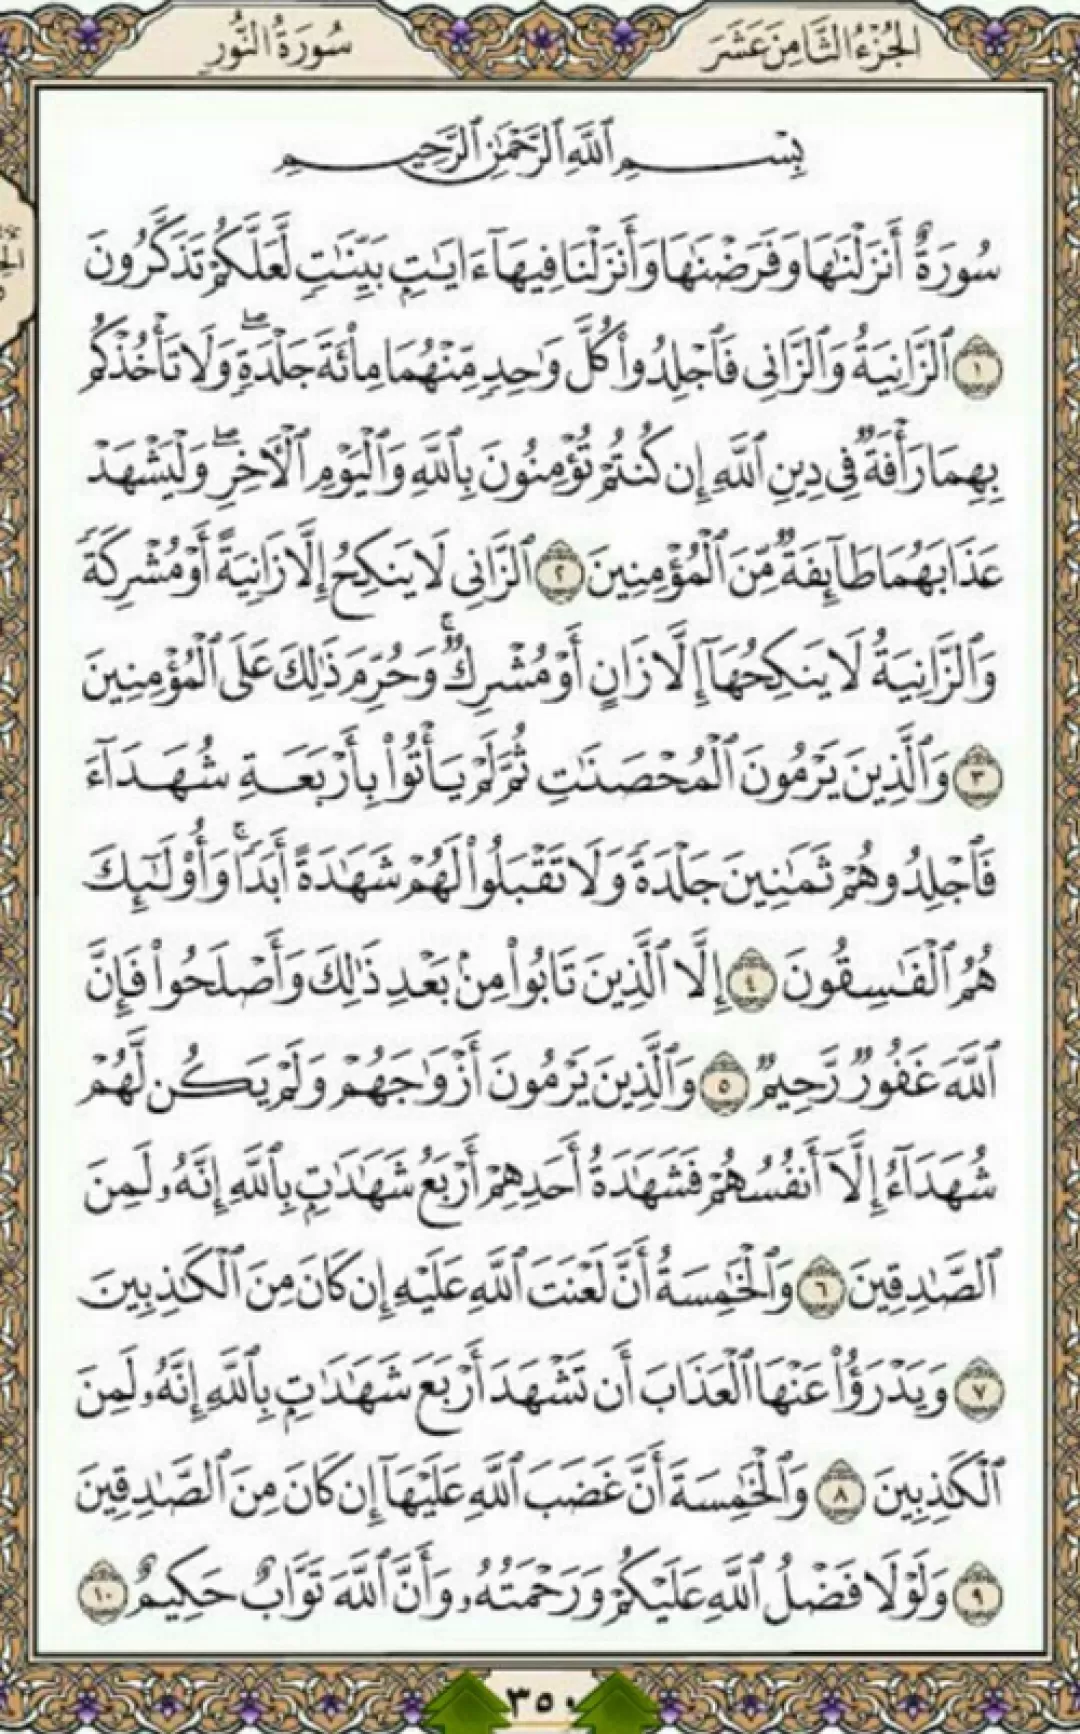 روزانه یک صفحه با نسیم الهی قرآن